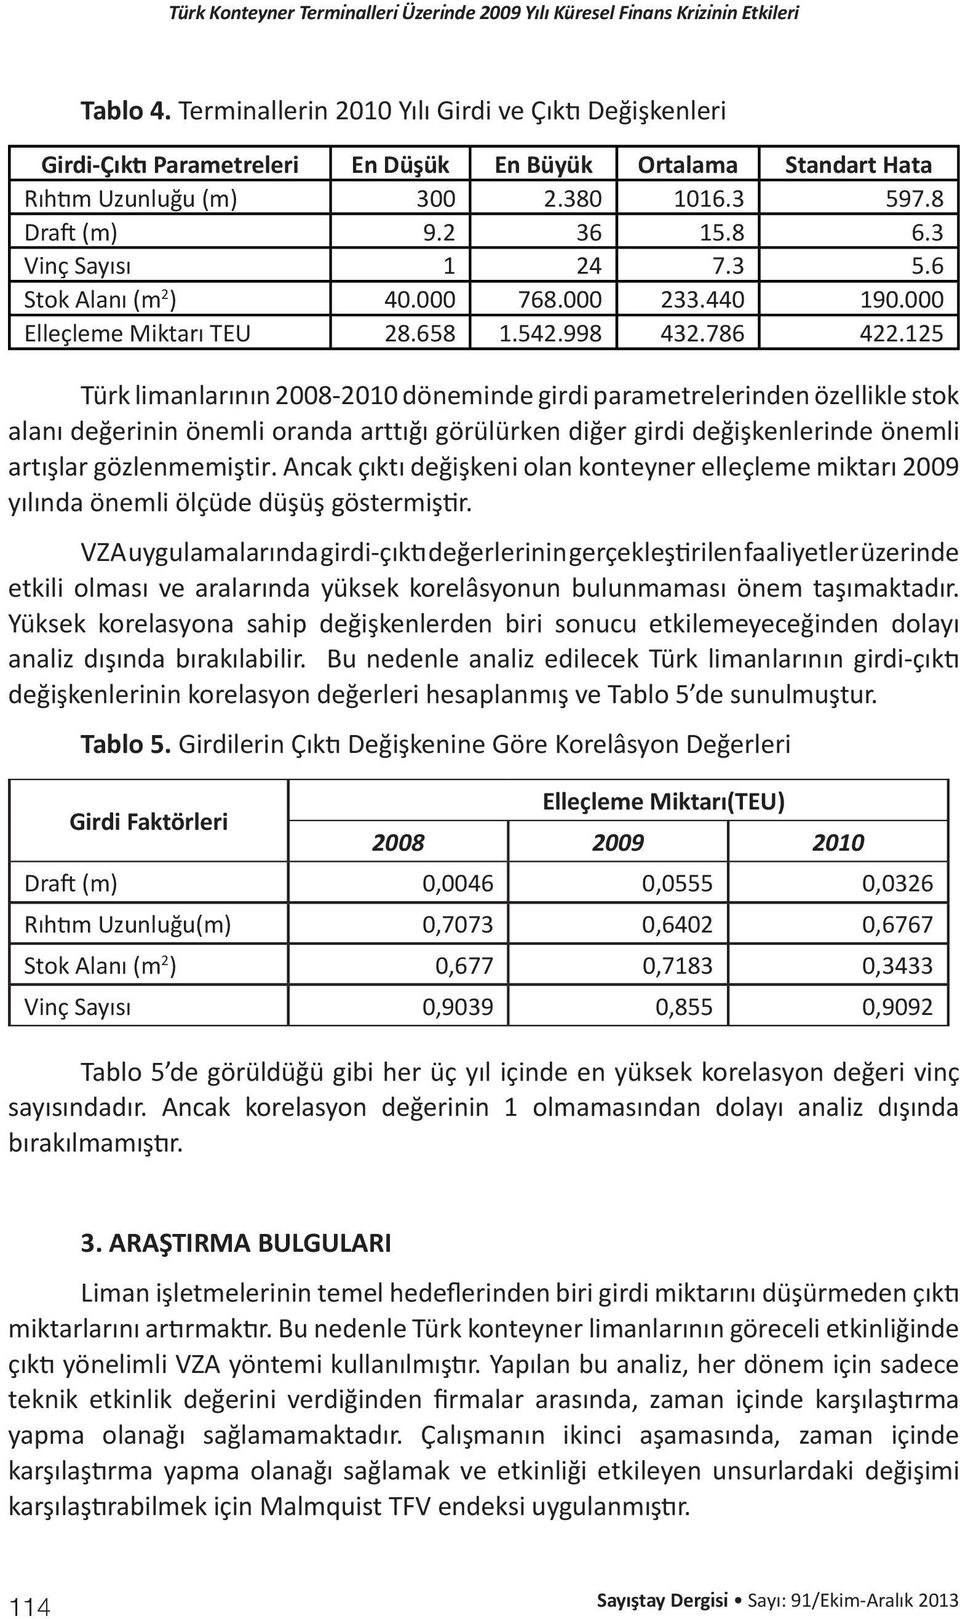 125 Türk limanlarının 2008-2010 döneminde girdi parametrelerinden özellikle stok alanı değerinin önemli oranda arttığı görülürken diğer girdi değişkenlerinde önemli artışlar gözlenmemiştir.